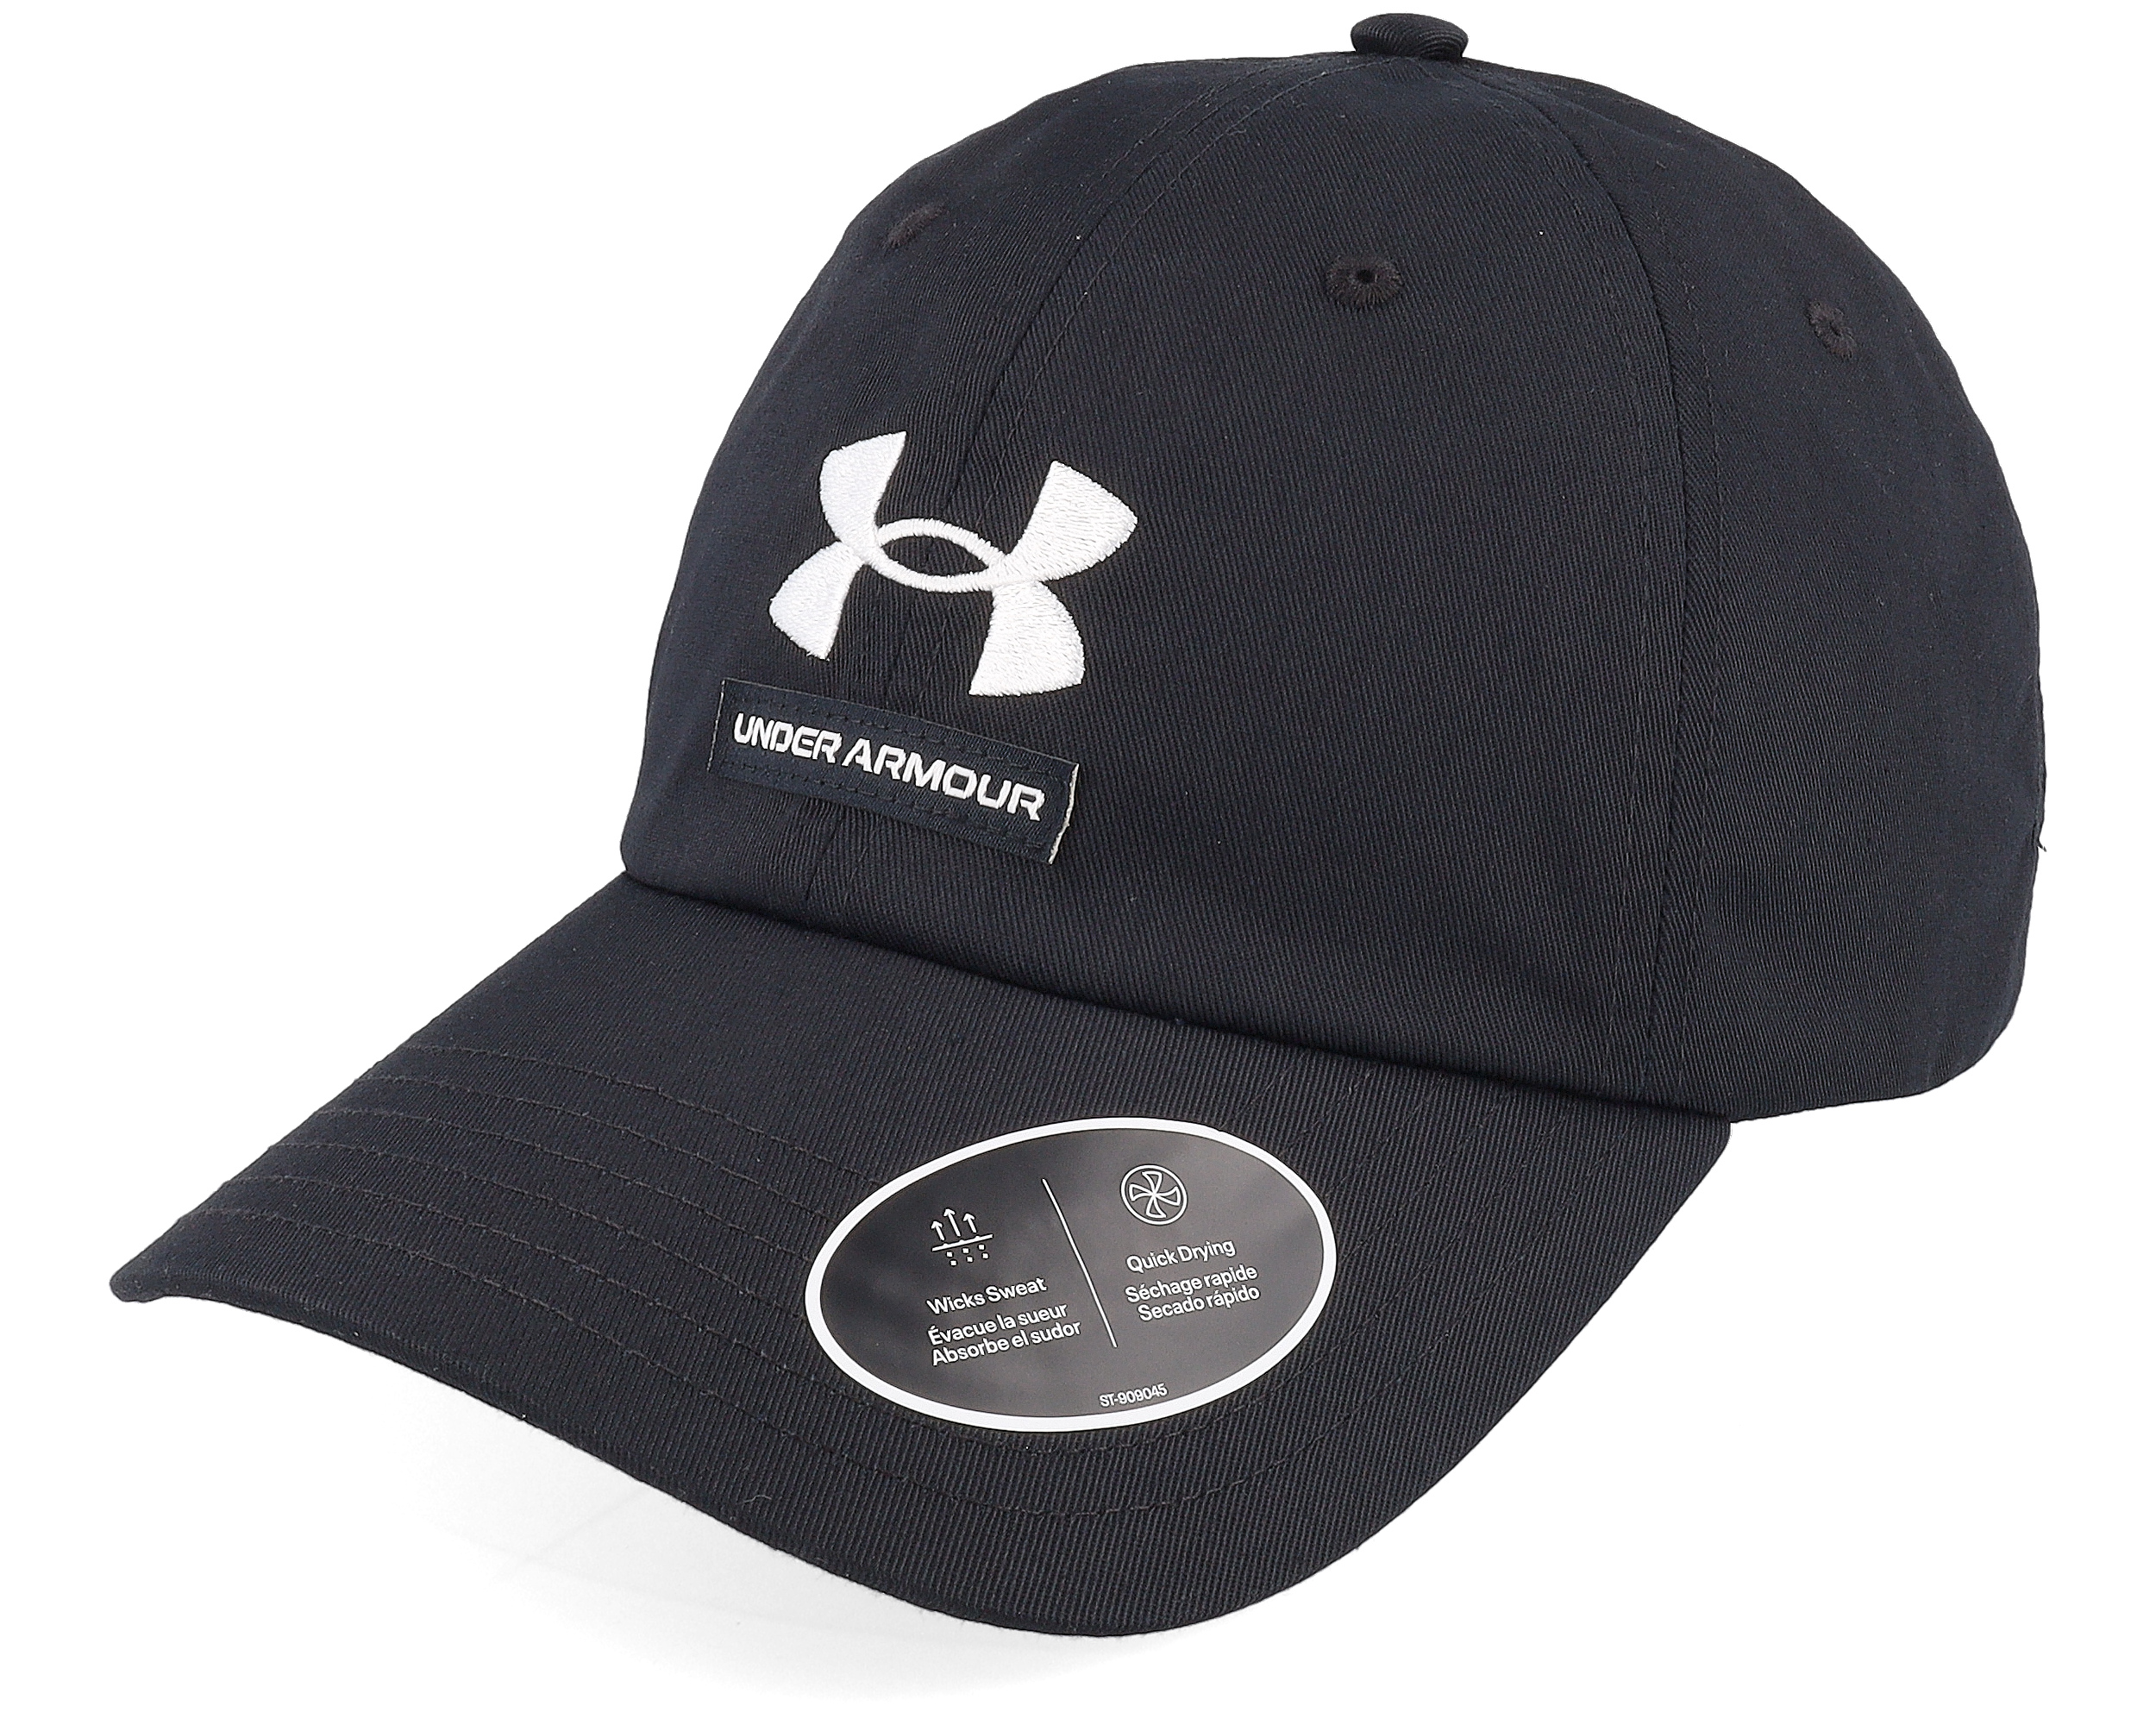 Branded Hat Black Dad Cap - Under Armour cap